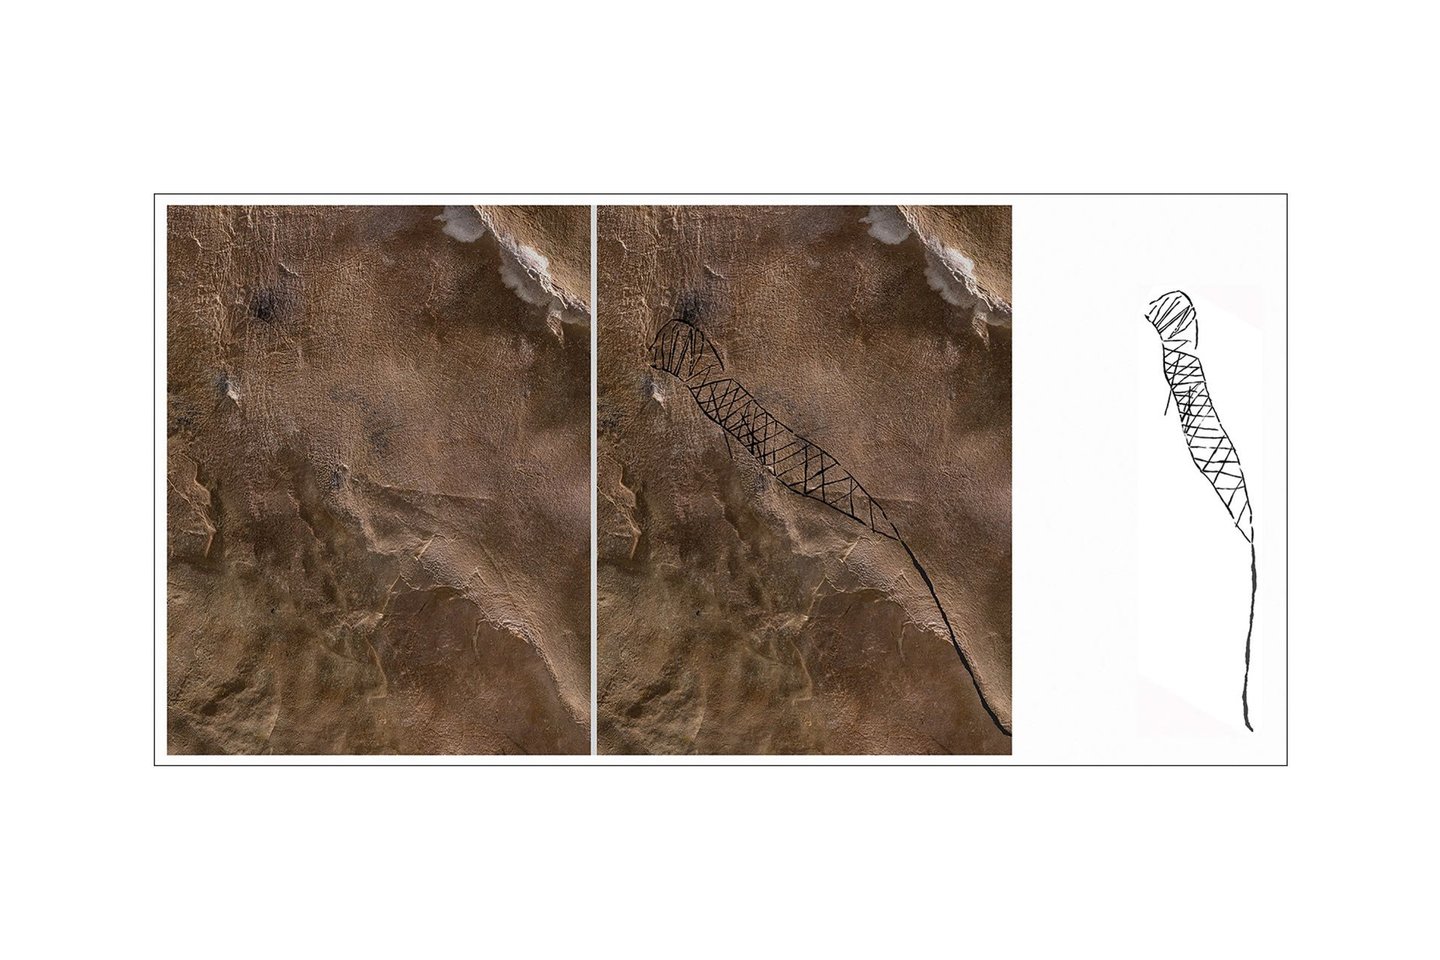  Gyvatės figūra su apvalia galva ir rombų formos kūno žymėmis iš 19-osios neįvardytos olos. Atkreipkite dėmesį, kad išraižyto glifo pagrindas jungiasi su natūraliu plyšiu lubų kalkakmenyje (3,3 m ilgio)<br> A. Cressler nuotr. / J. Simako iliustr.